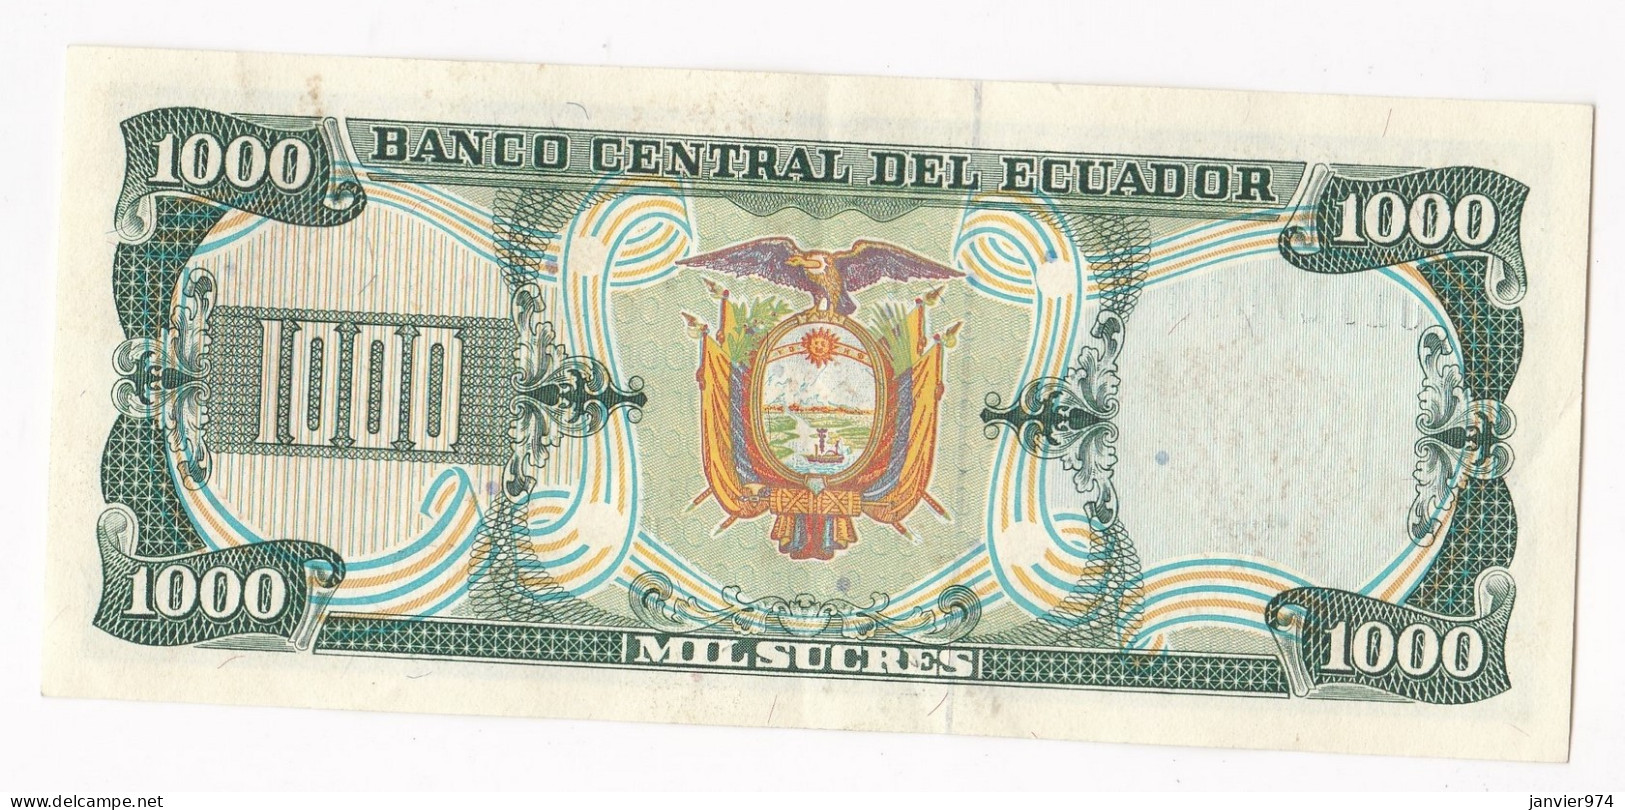 Equateur 1000 Sucres 1988 , Serie IZ N°01127694, Billet Neuf - UNC - Ecuador